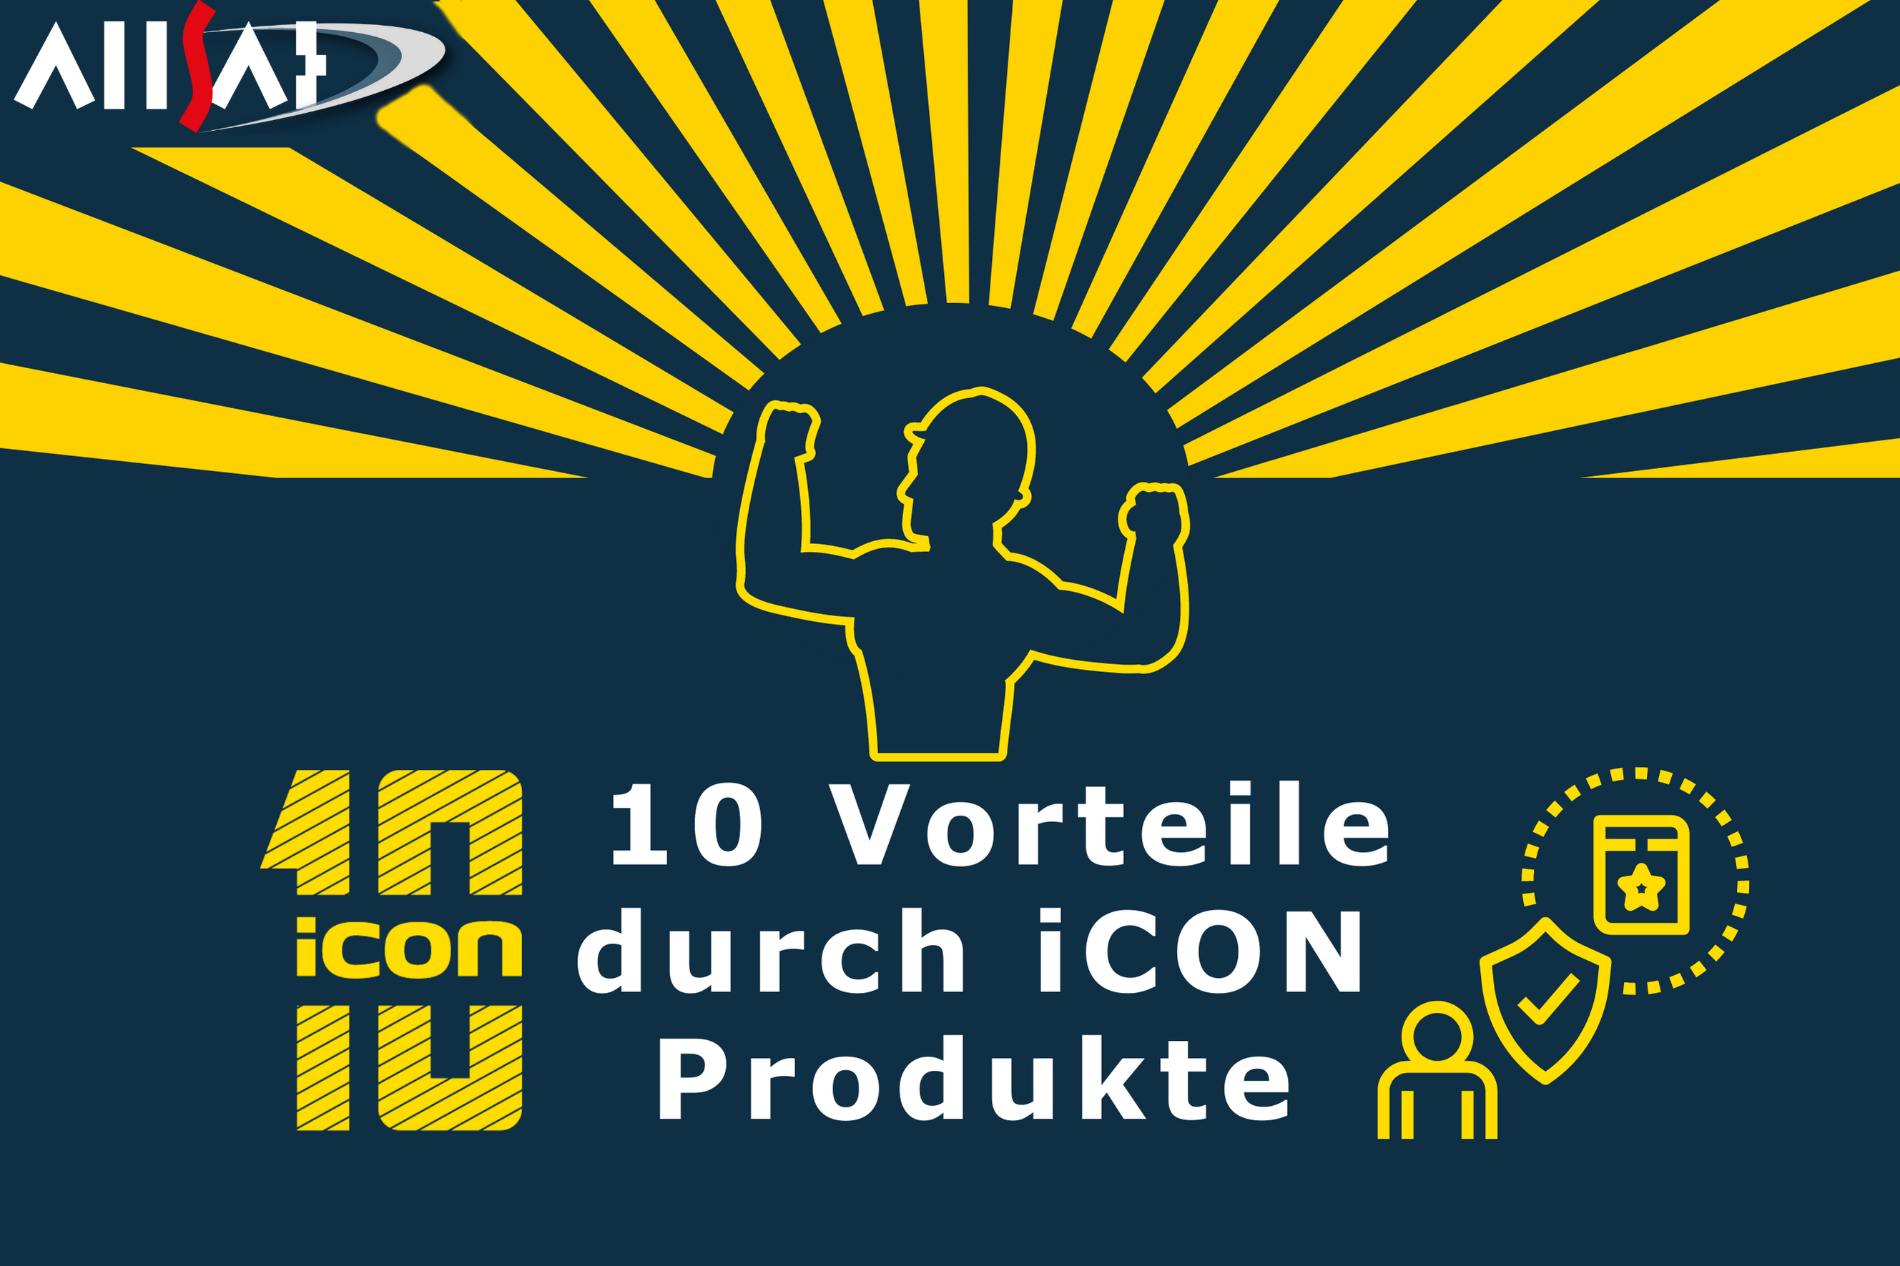 10 Vorteile durch iCON Produkte